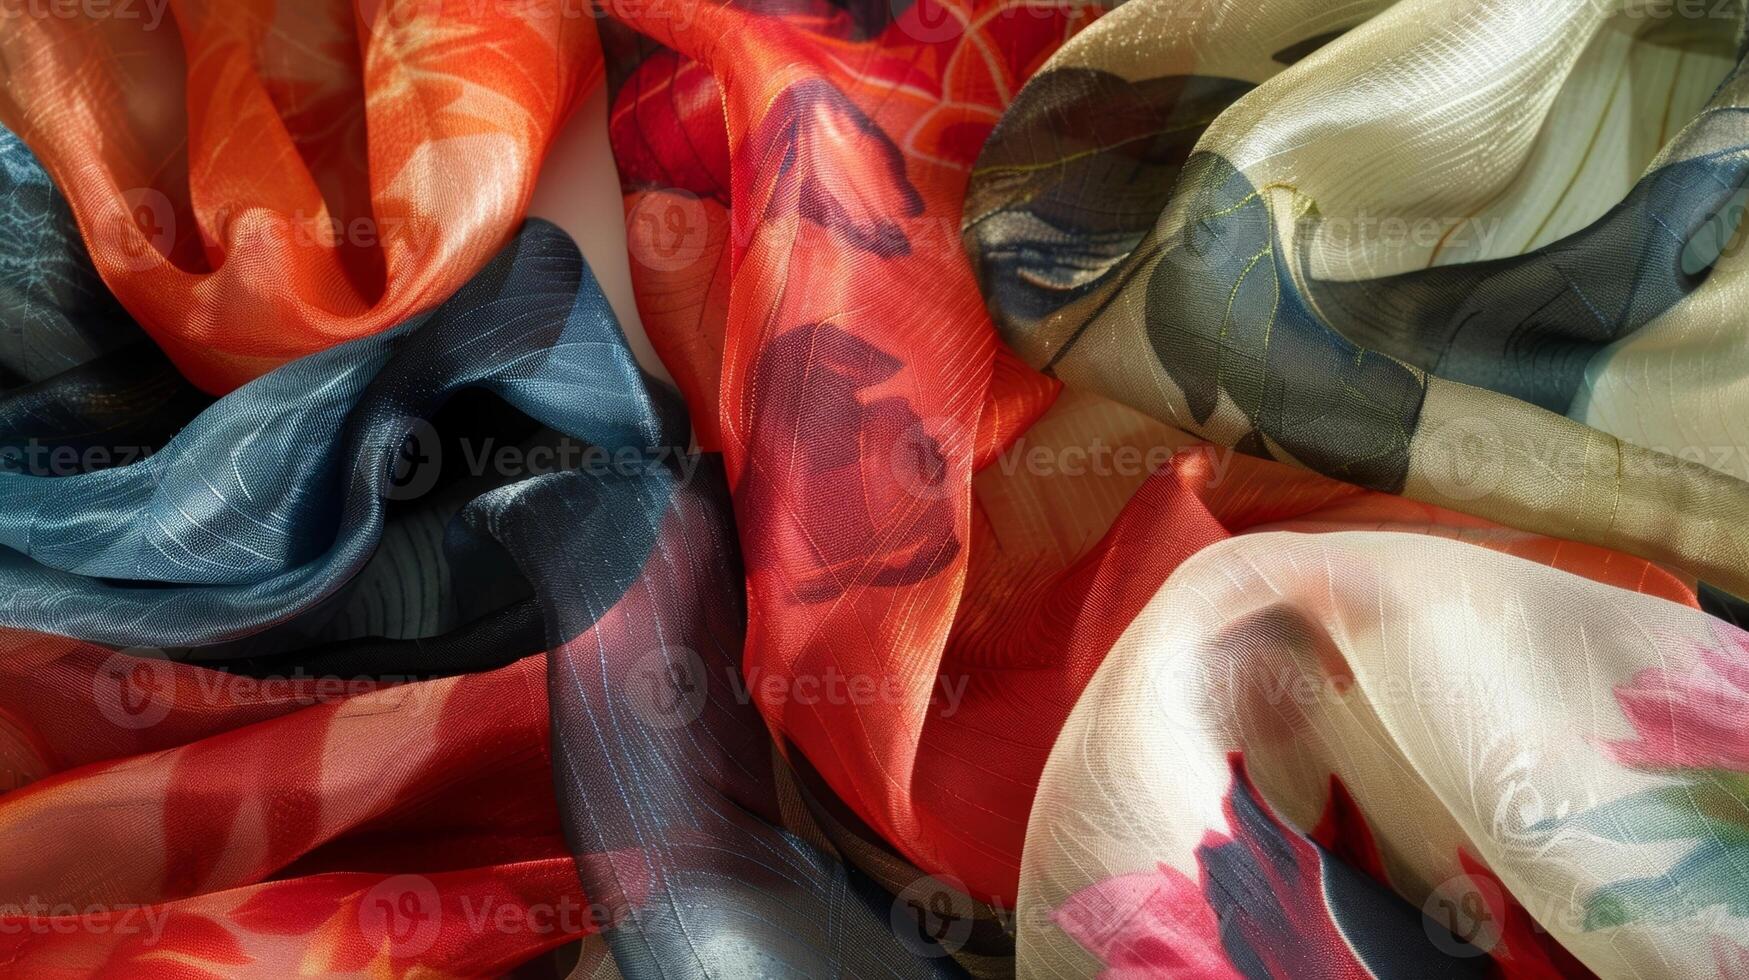 suave a el toque y seductor a el ojo estos bufandas evocar un sentido de lujo y sofisticación foto